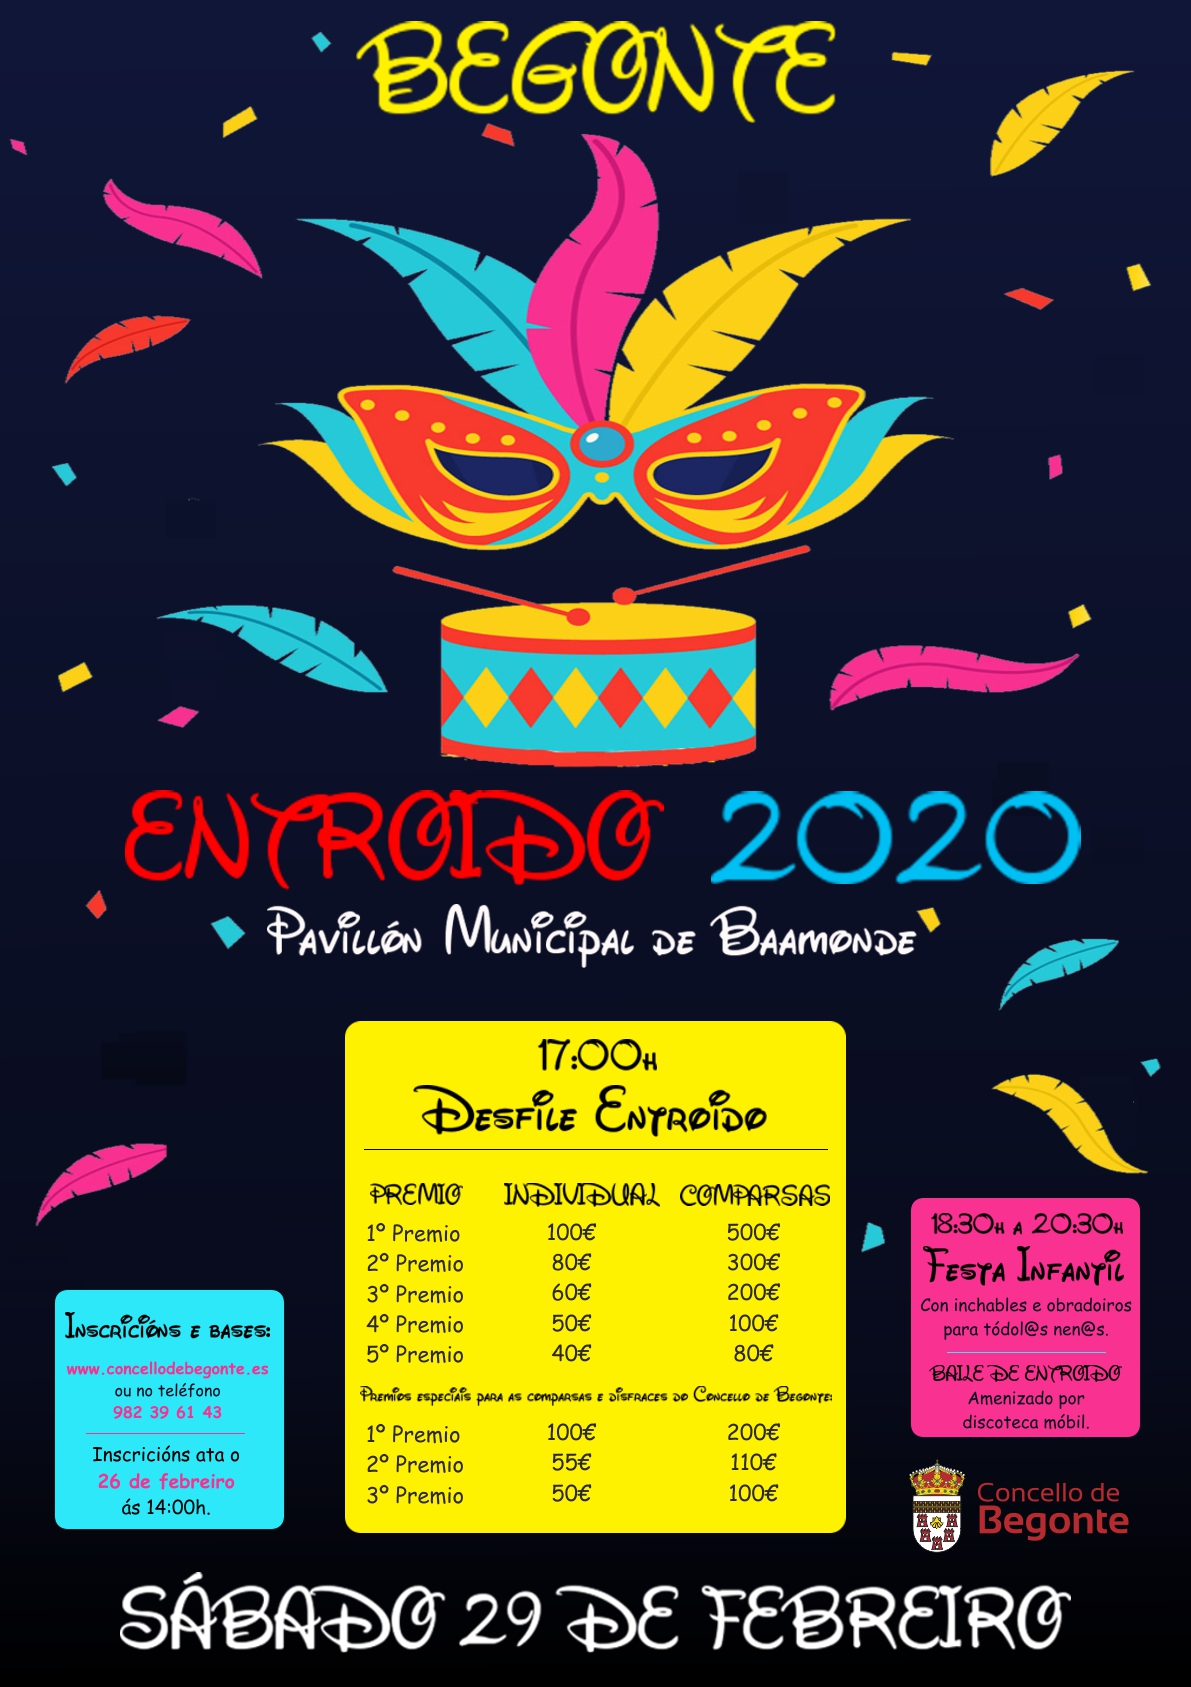 Cartel Entroido 2020 Begonte